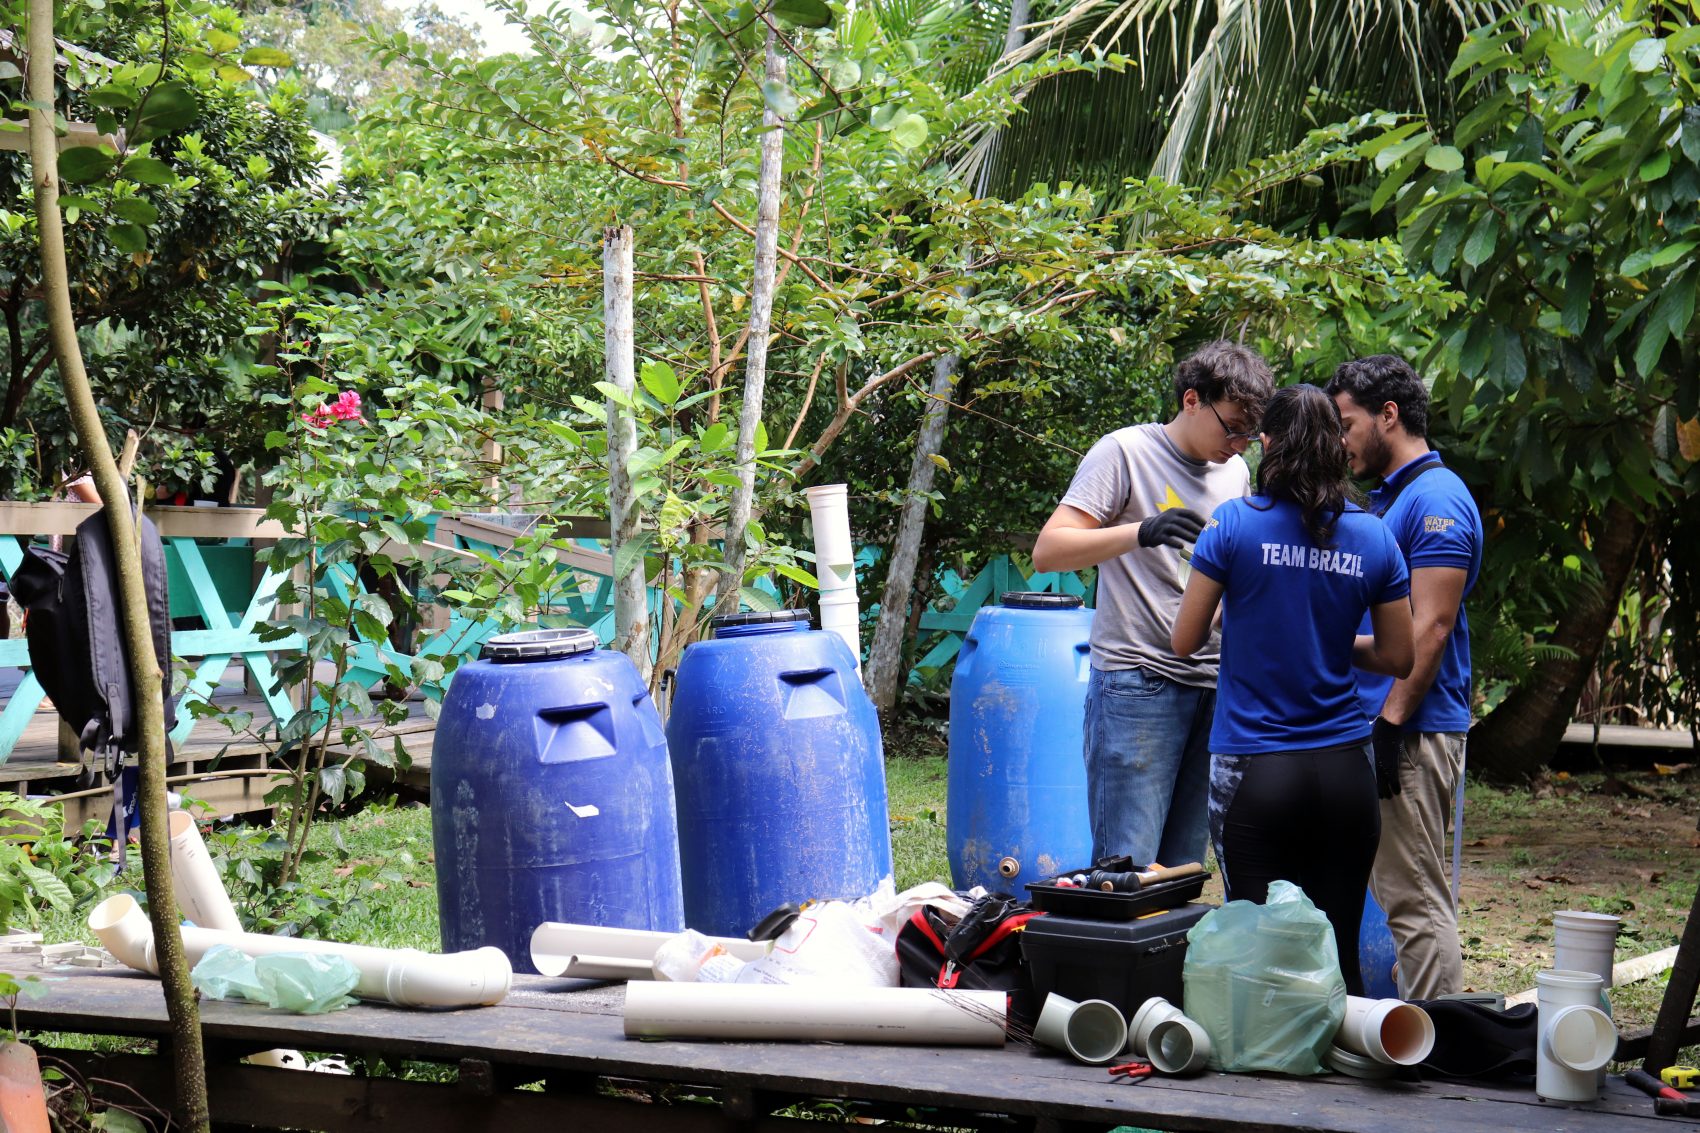 Cisternas do Amana Katu, tupi-guarani para água boa: capacidade para armazenar e filtrar 240 litros (Foto: Mariana Vieira/Divulgação)